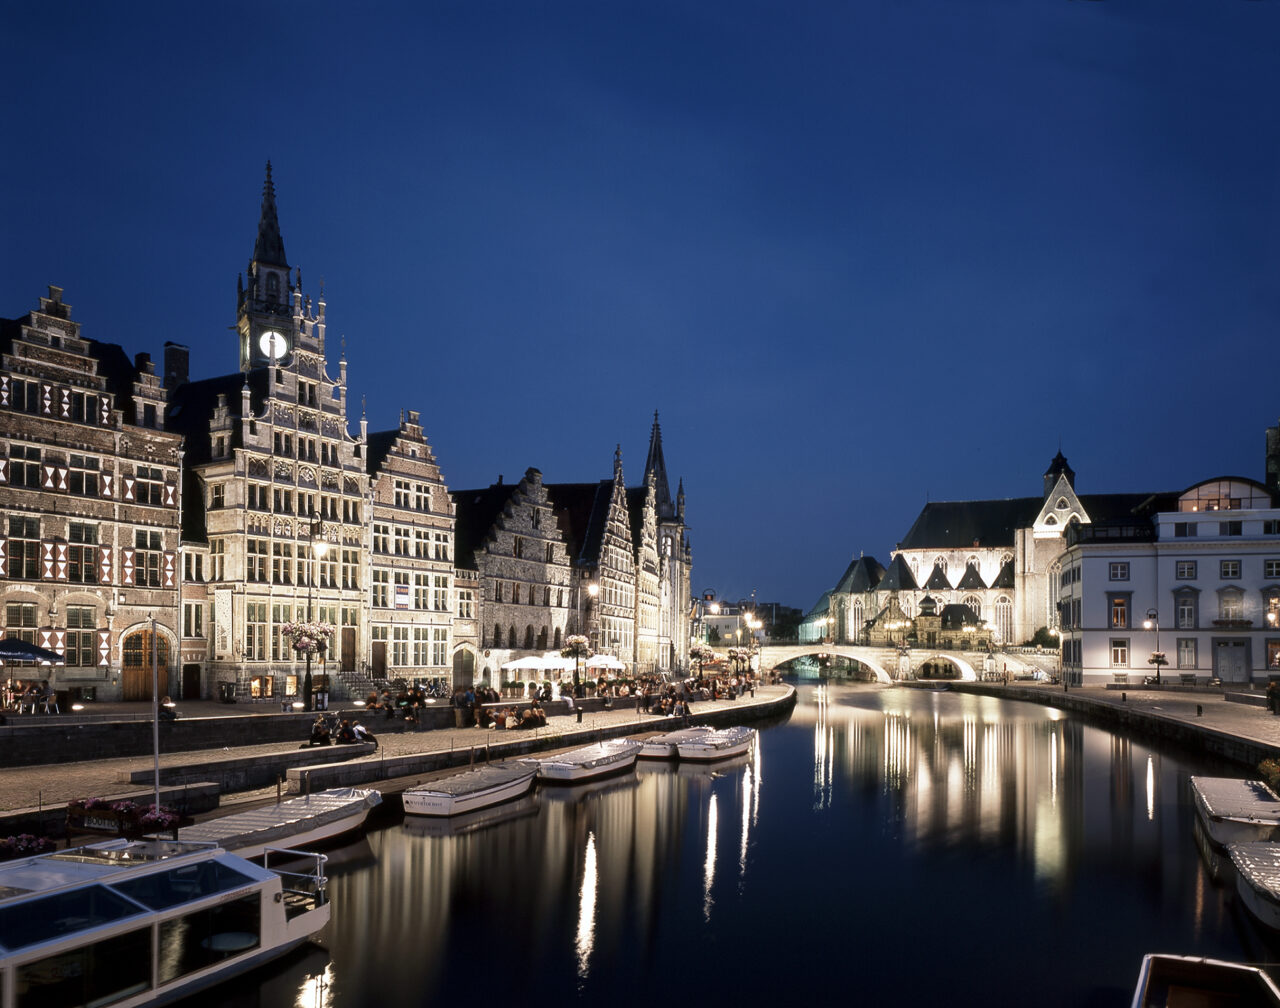 Illuminated Ghent